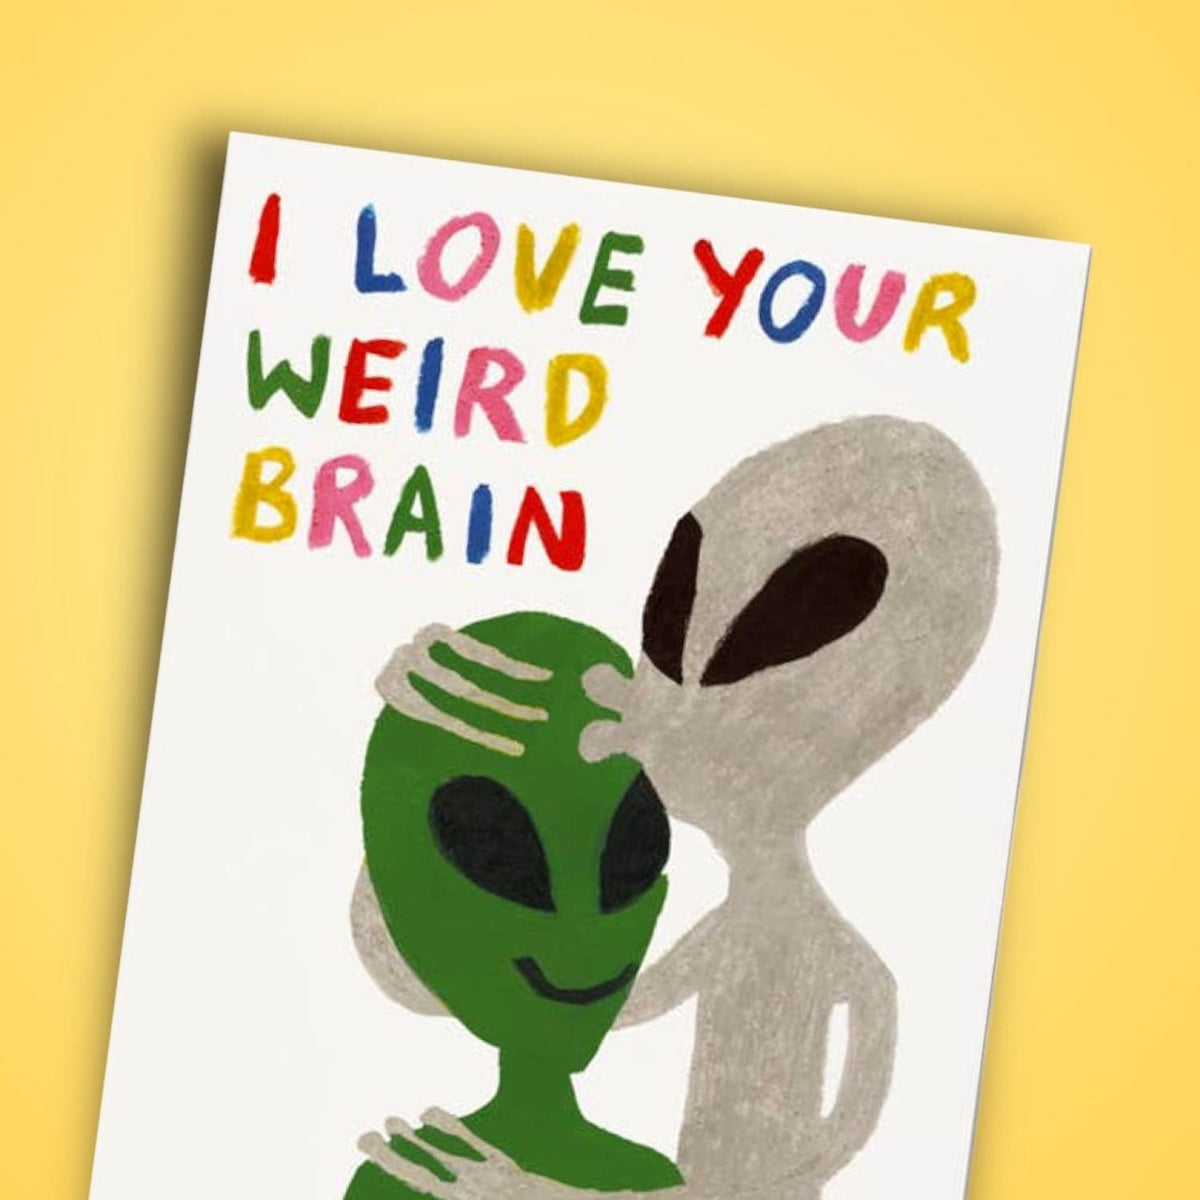 Weird Brain Alien Love Valentine’s Day Card Greeting Card -